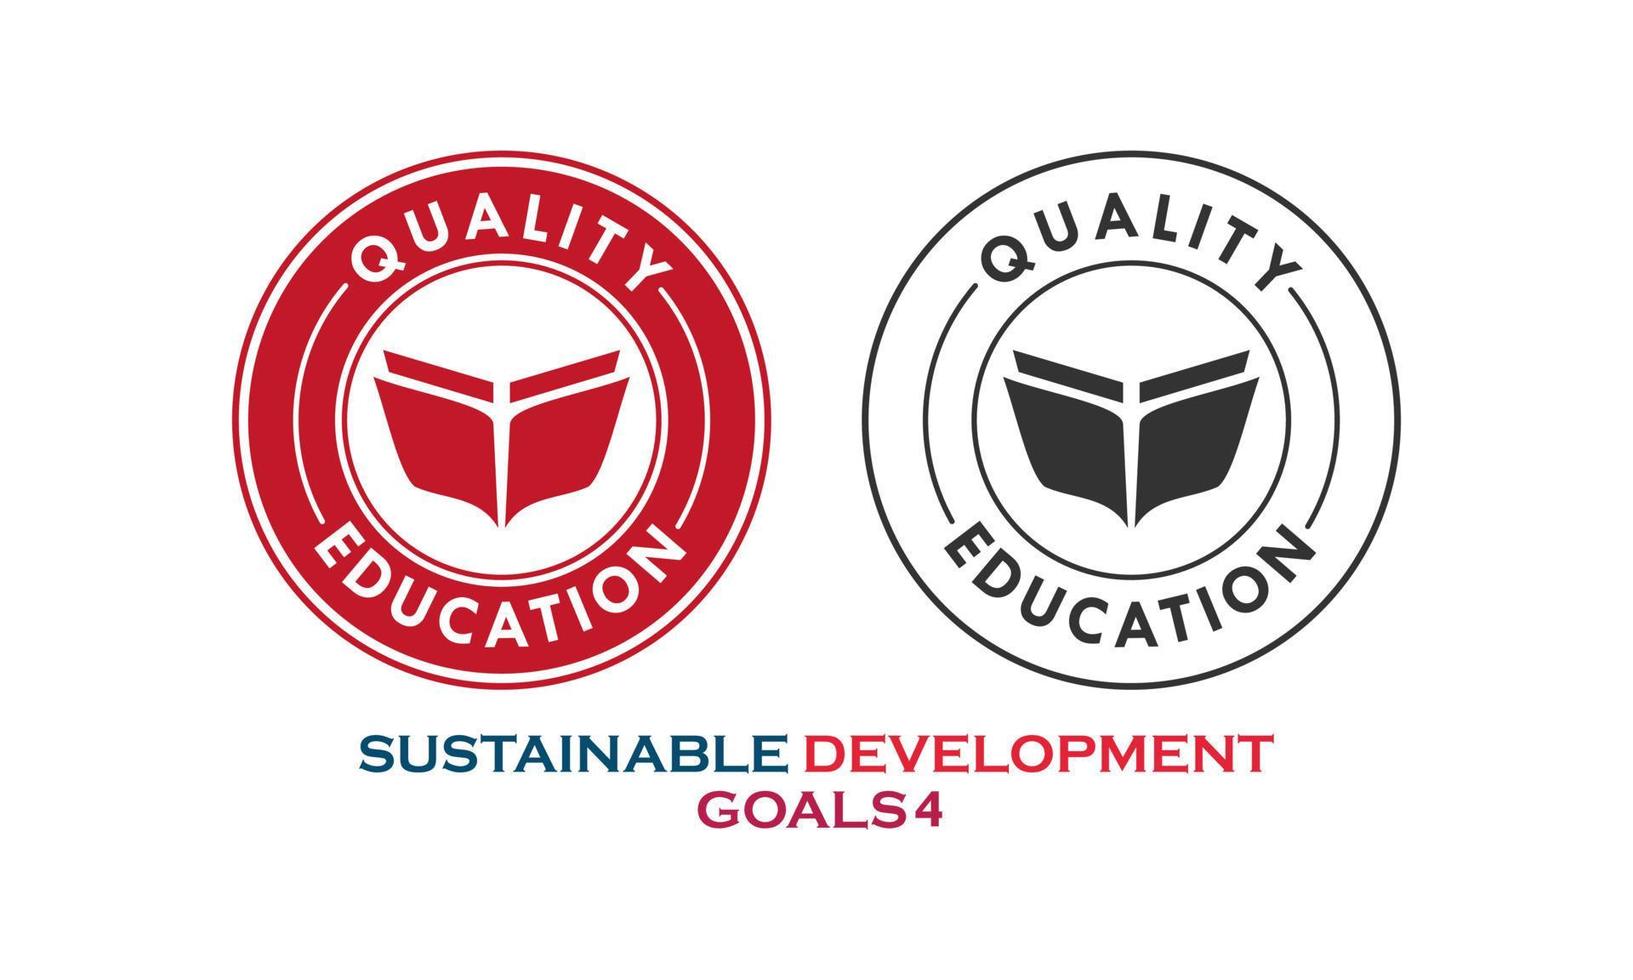 objectifs de développement durable, élément de l'éducation de qualité vecteur